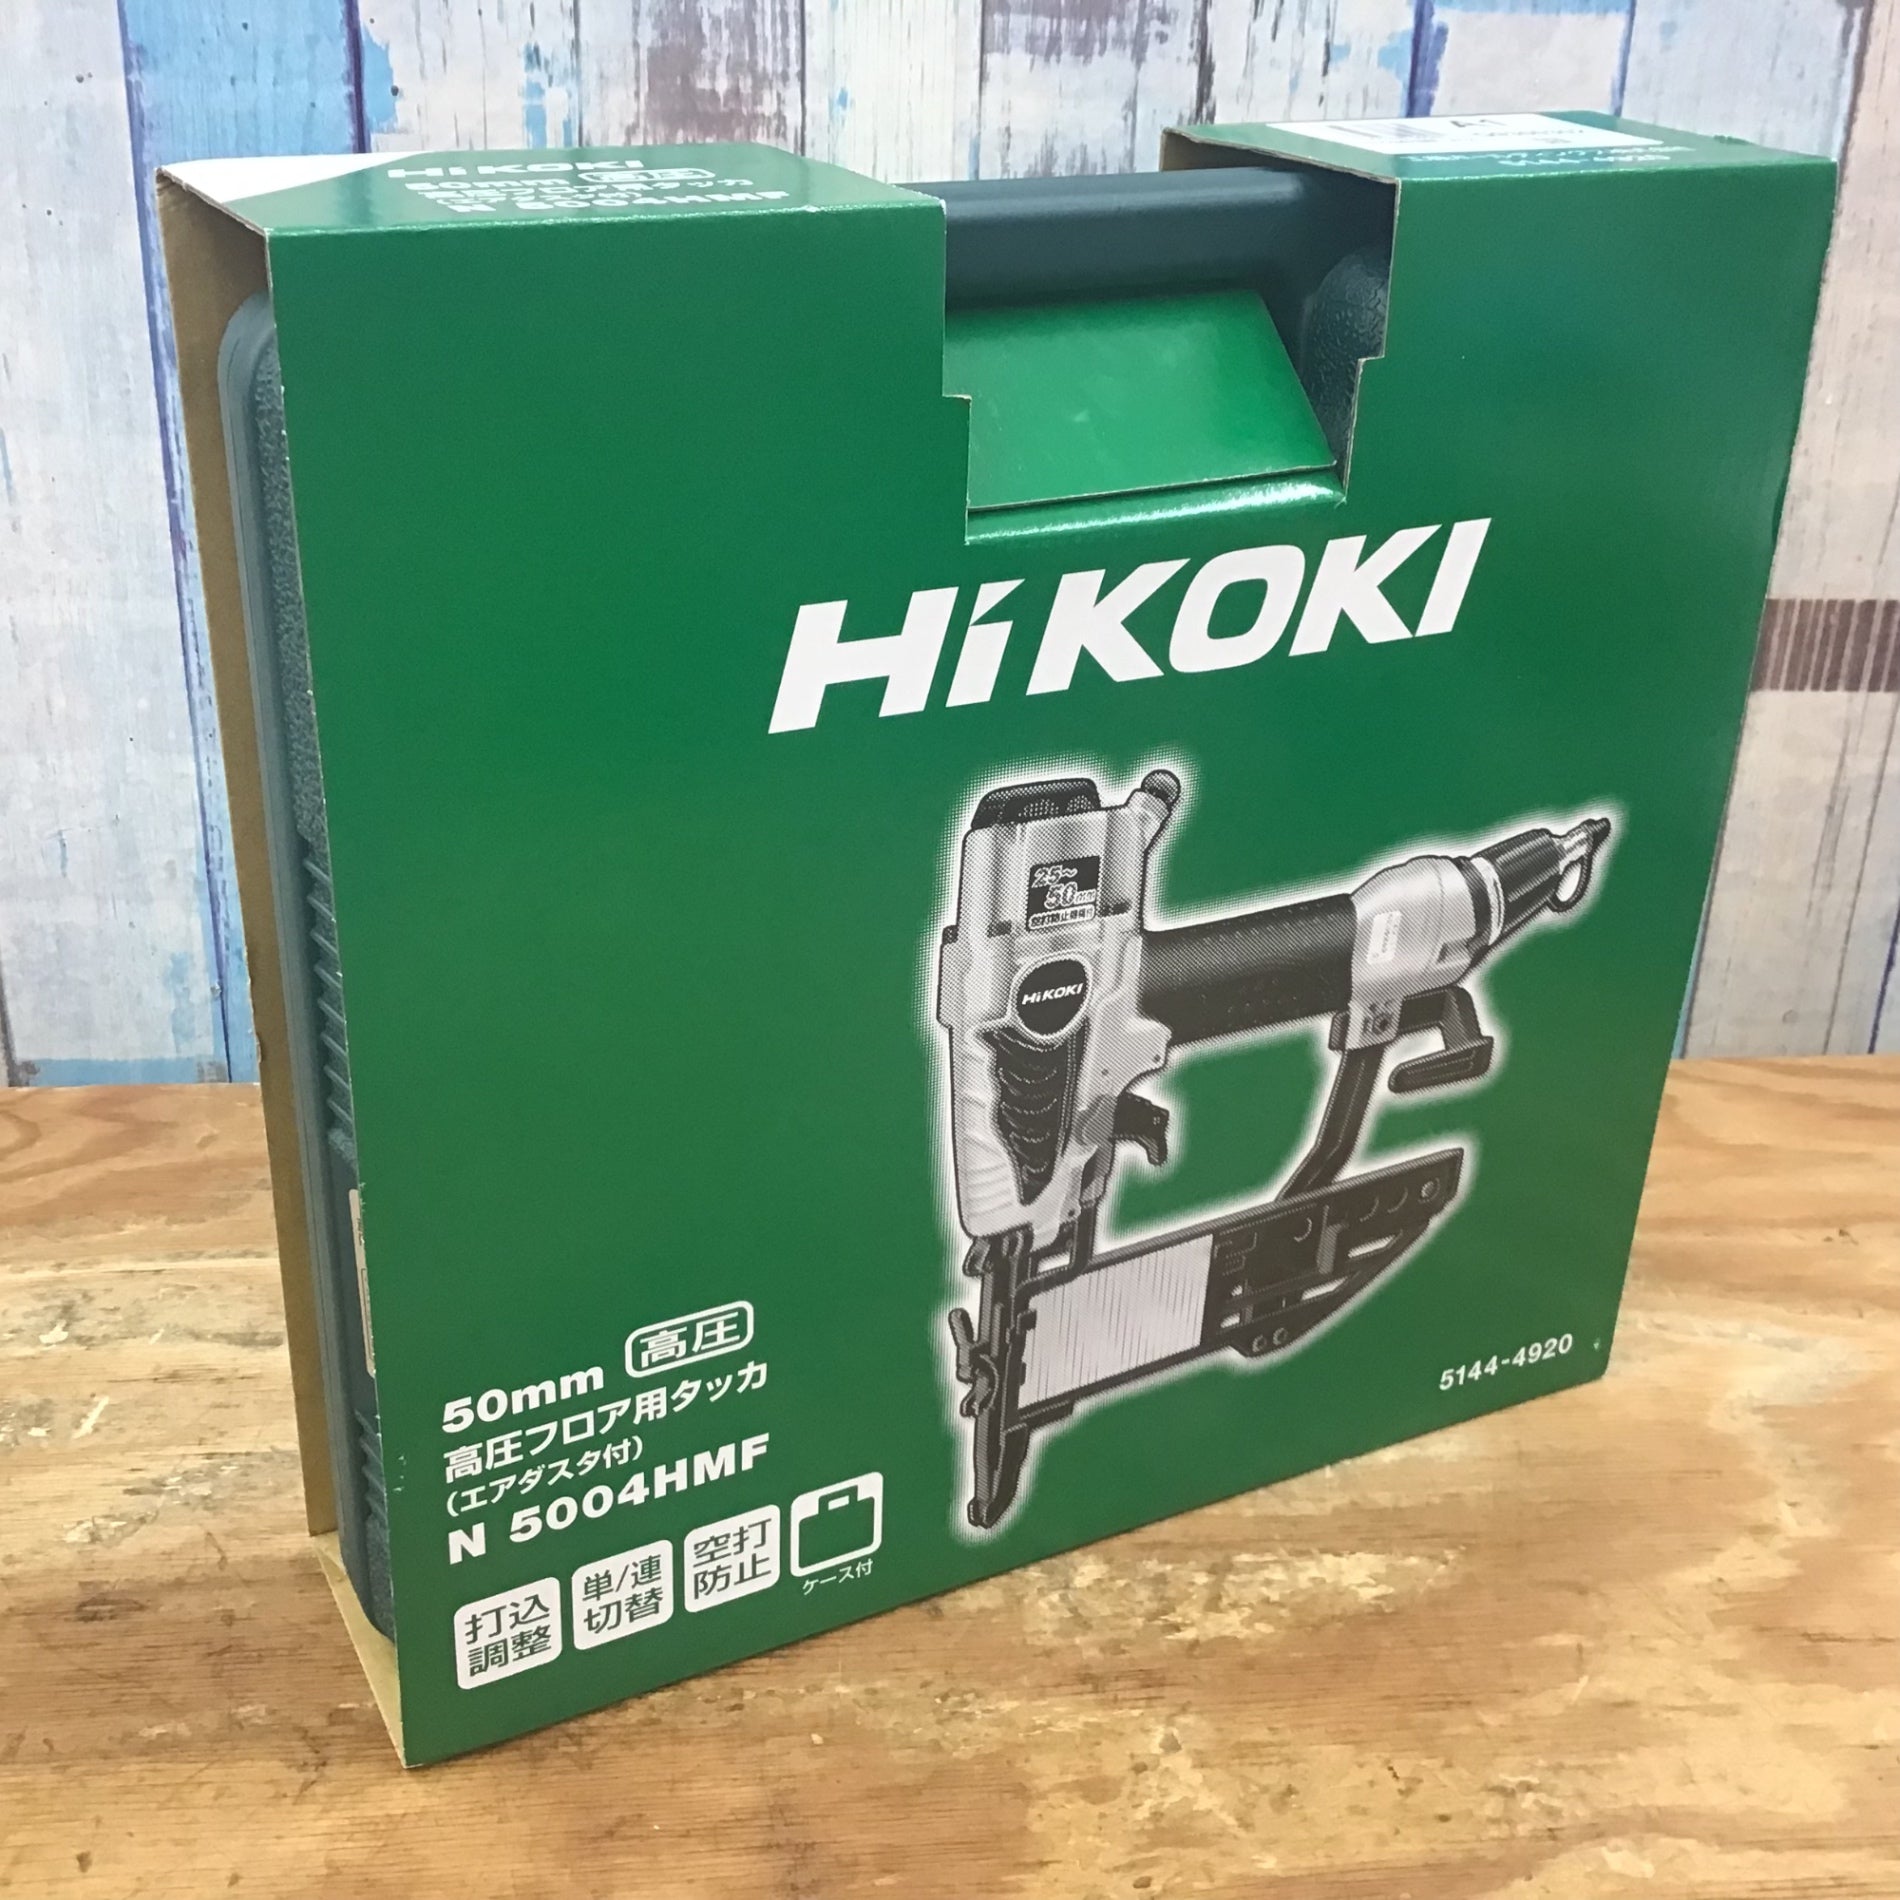 ☆ハイコーキ(HIKOKI ※旧:日立工機) 高圧フロアタッカ N5004HMF【柏店 ...